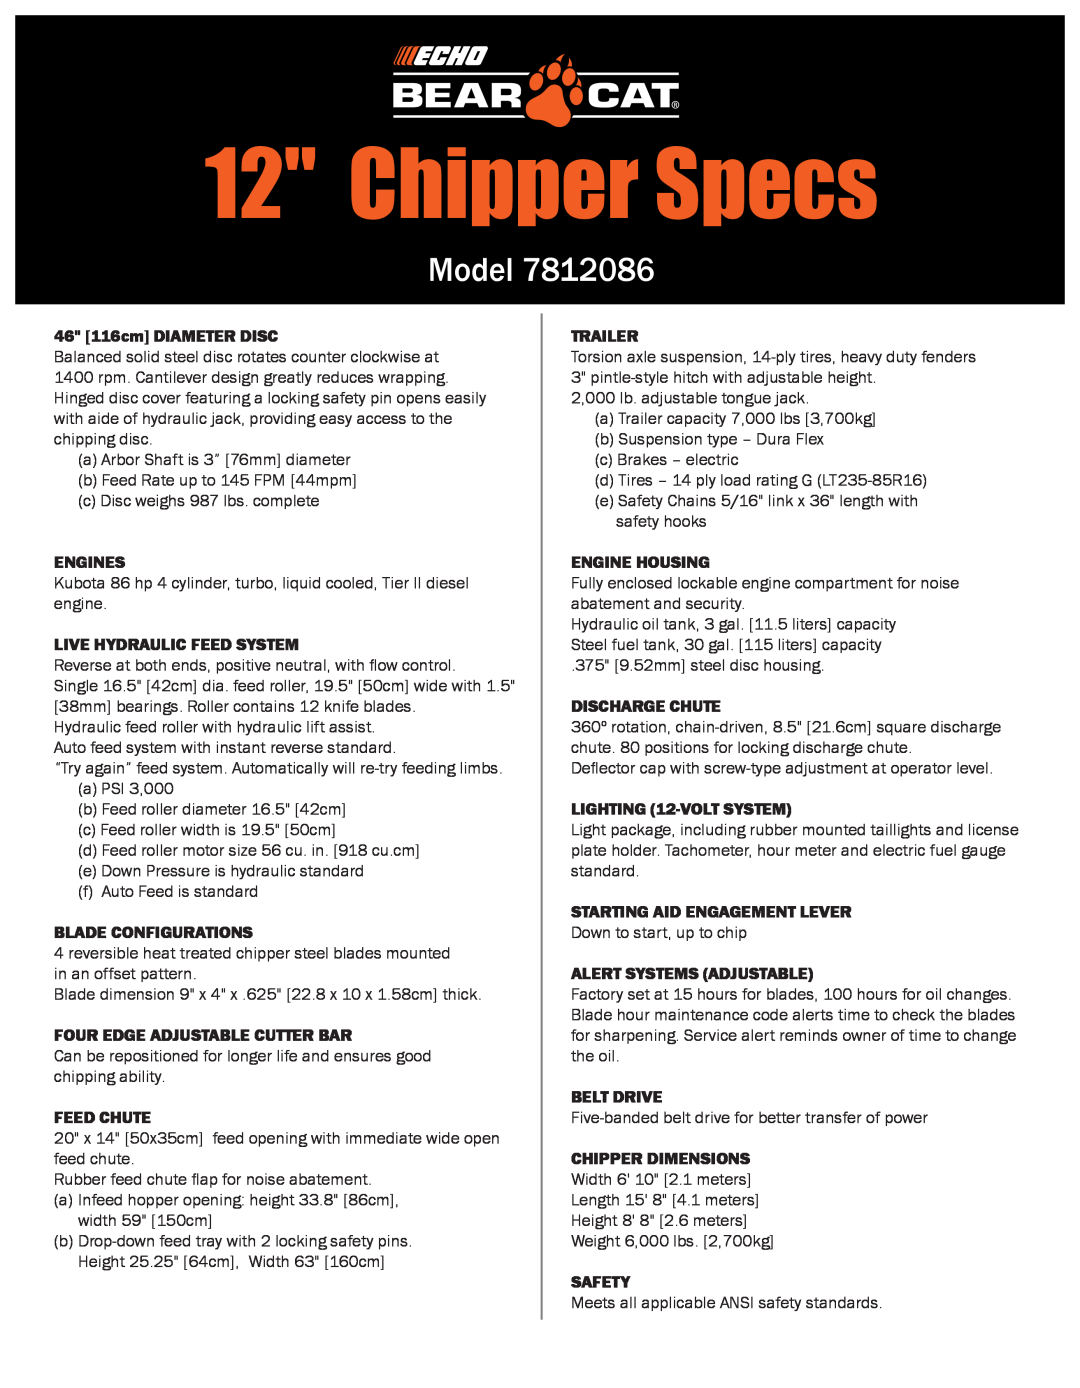 Echo 7812086 manual Model, Chipper Specs 